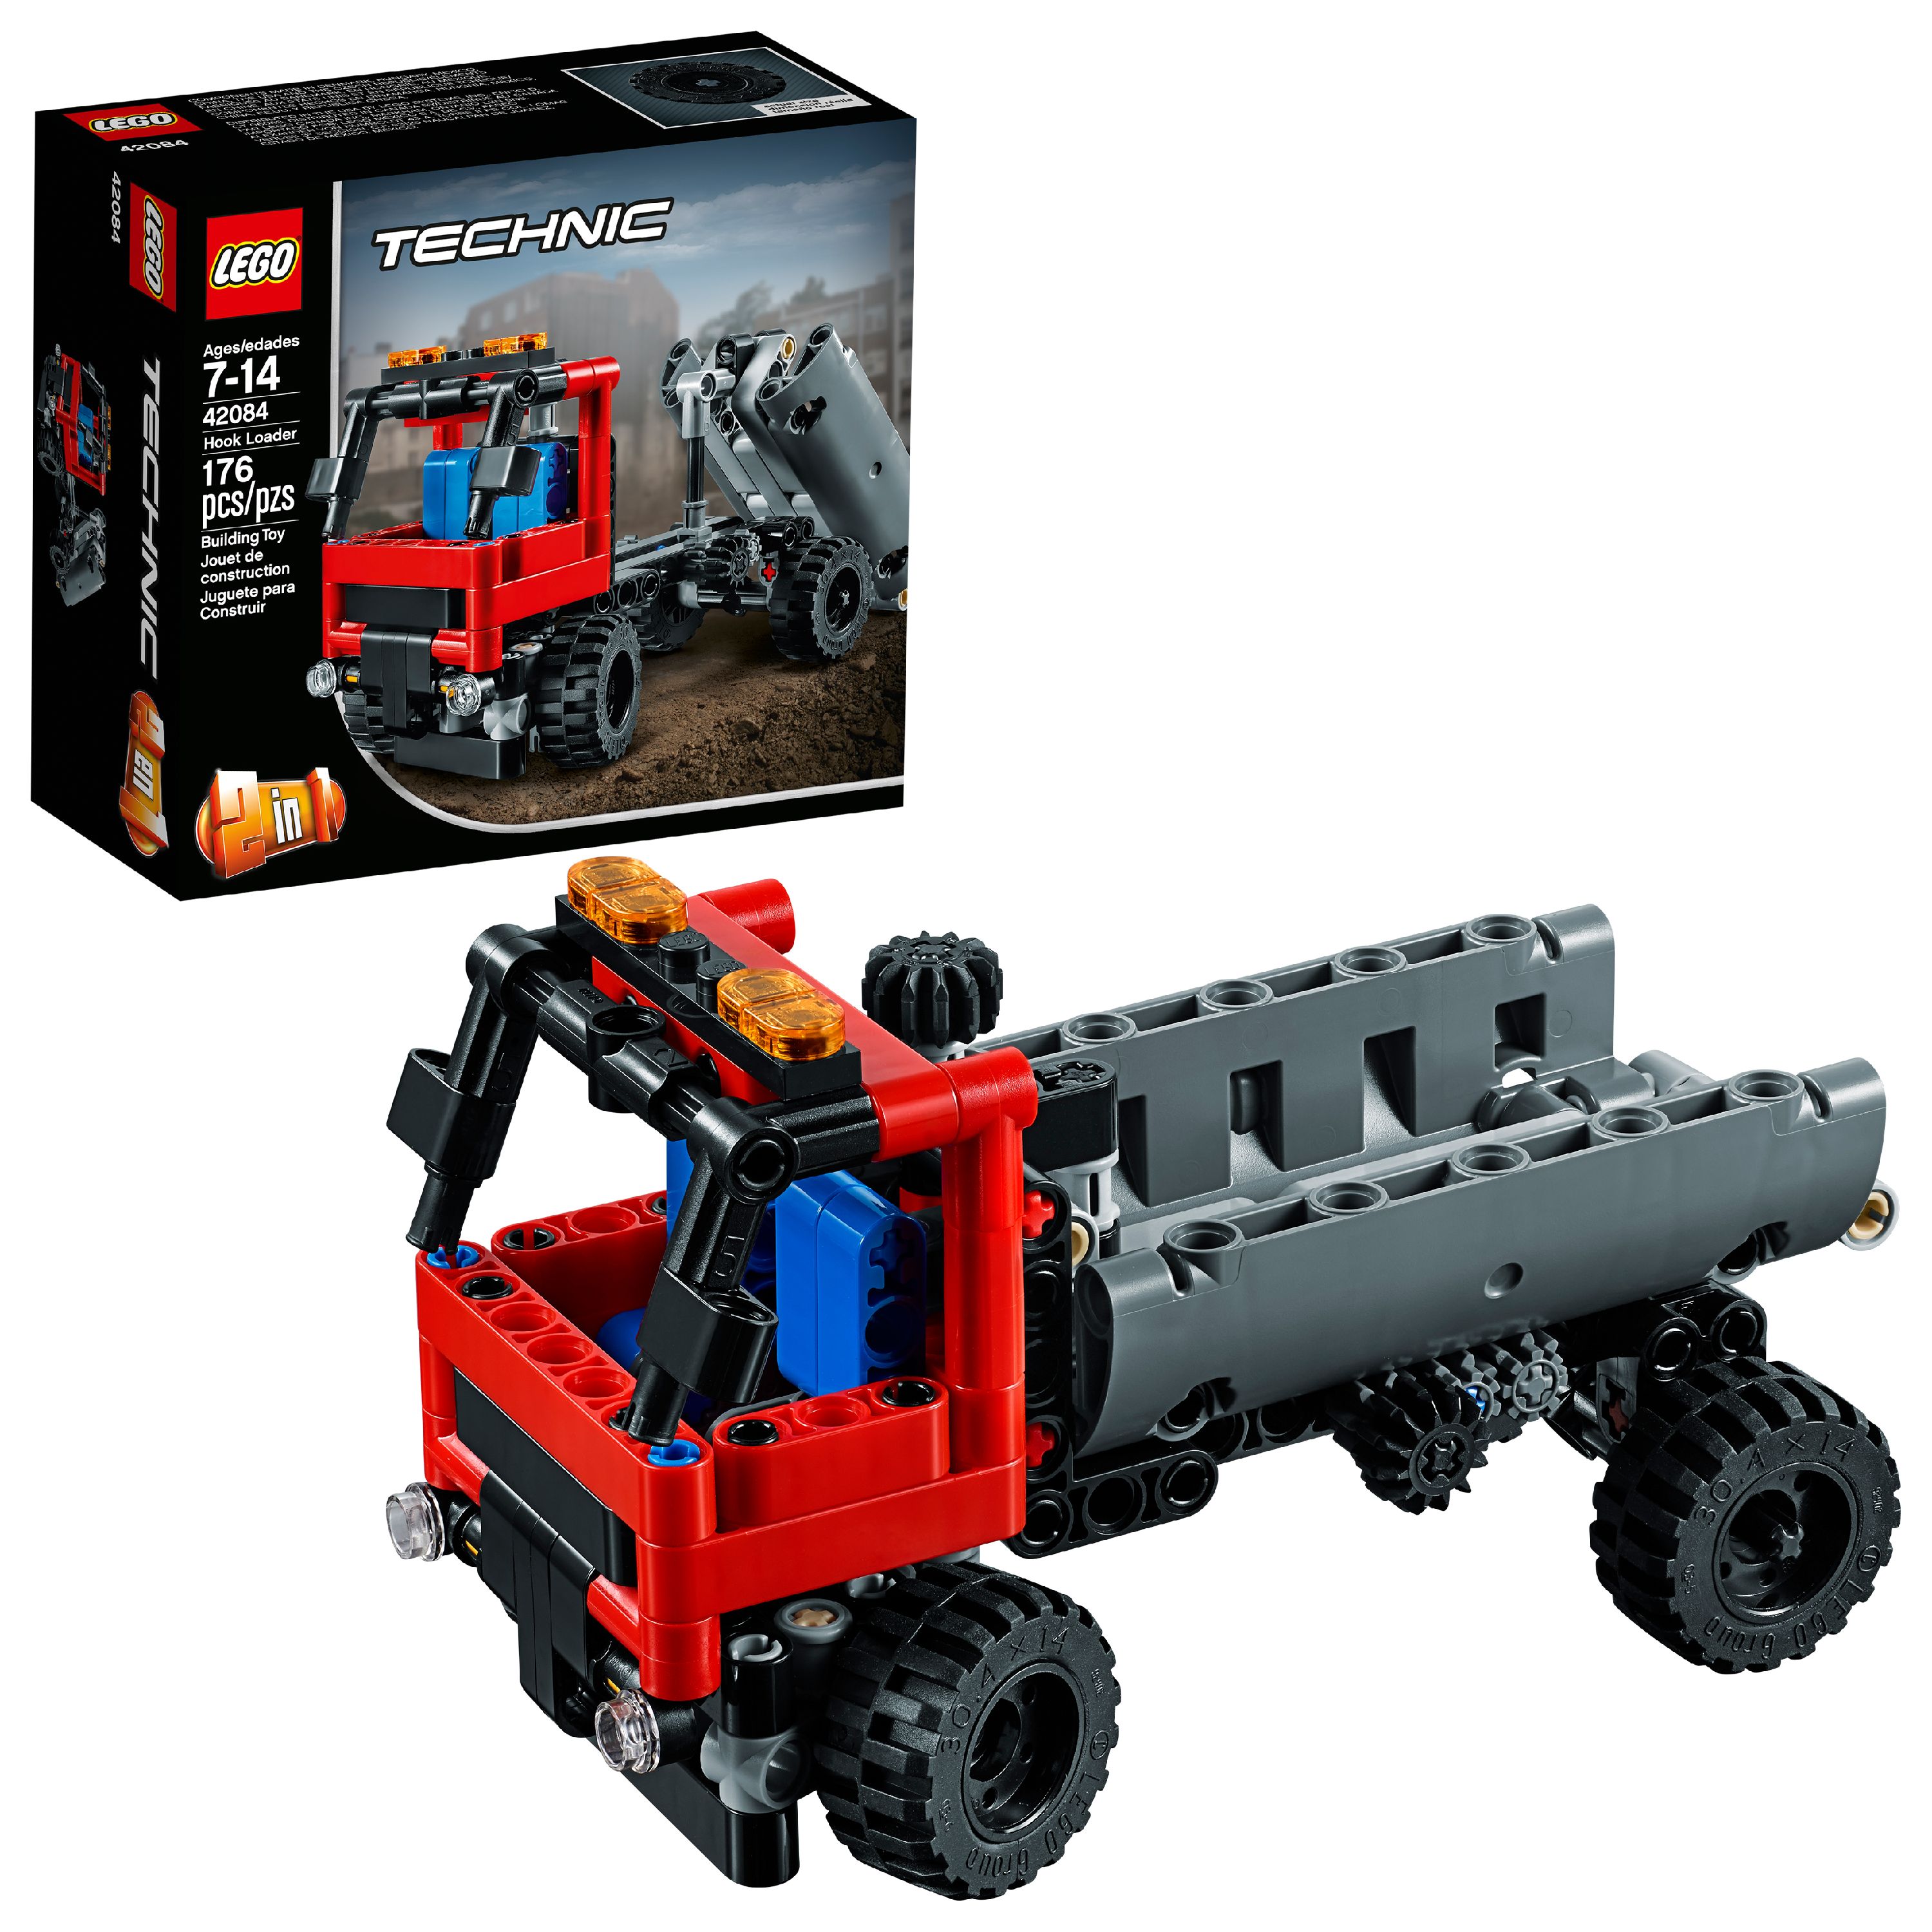 LEGO Technic Hook Loader 42084 - image 1 of 7